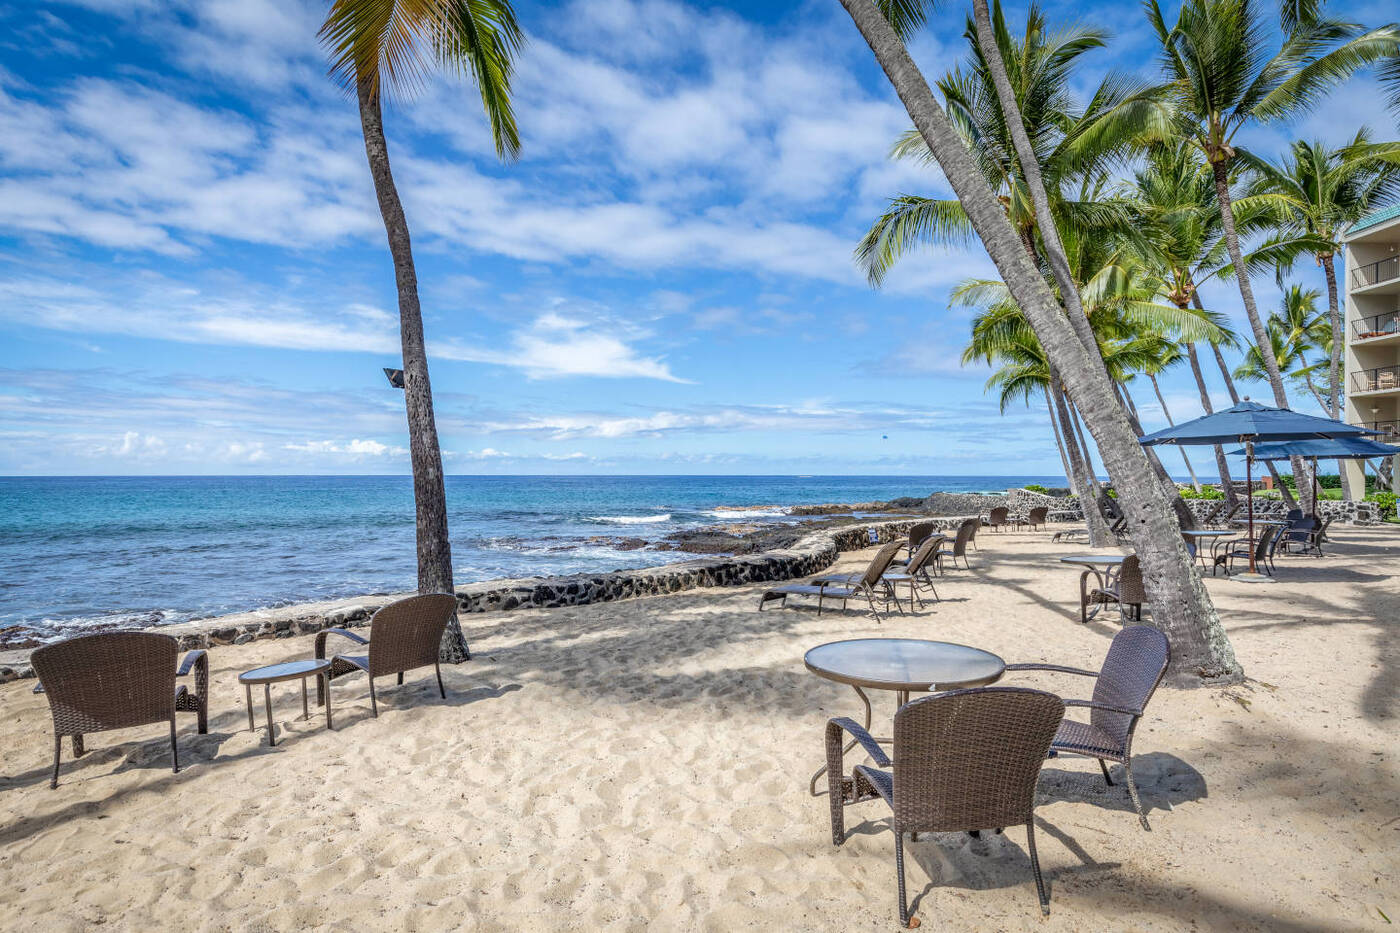 晴れた日の海岸線沿いのヤシの木の下や砂浜に置かれた椅子